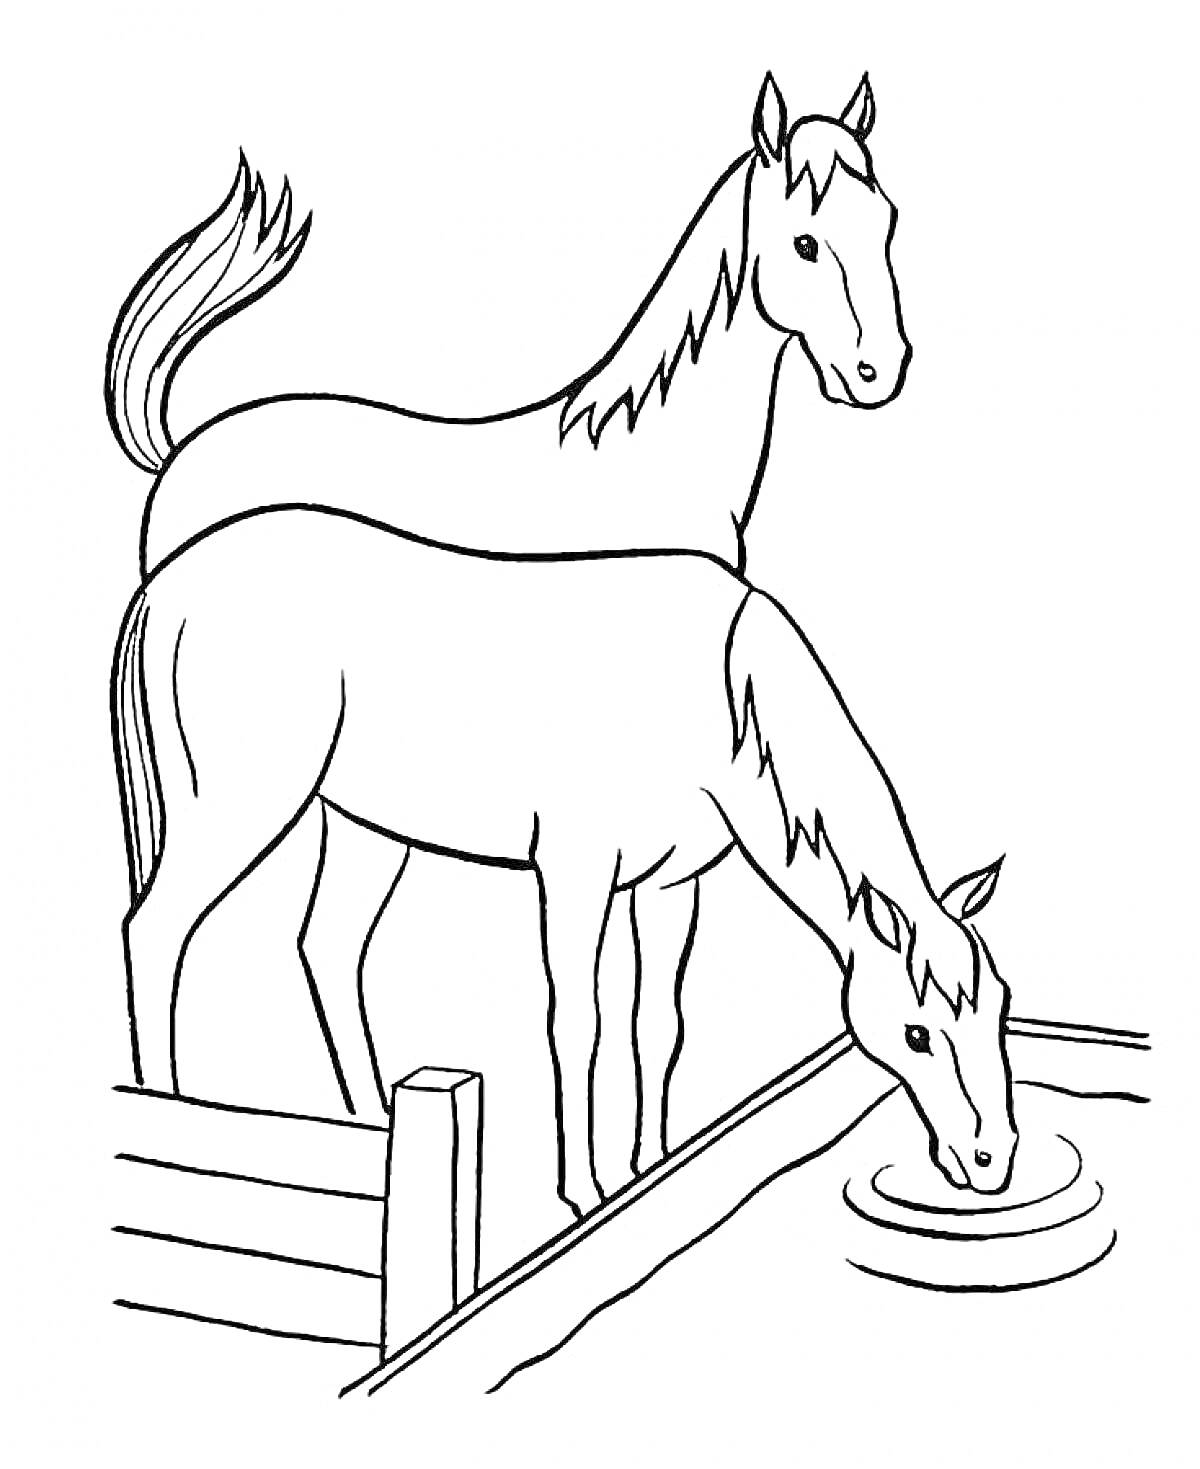 Раскраска Две лошади возле забора, одна пьет воду из водоема